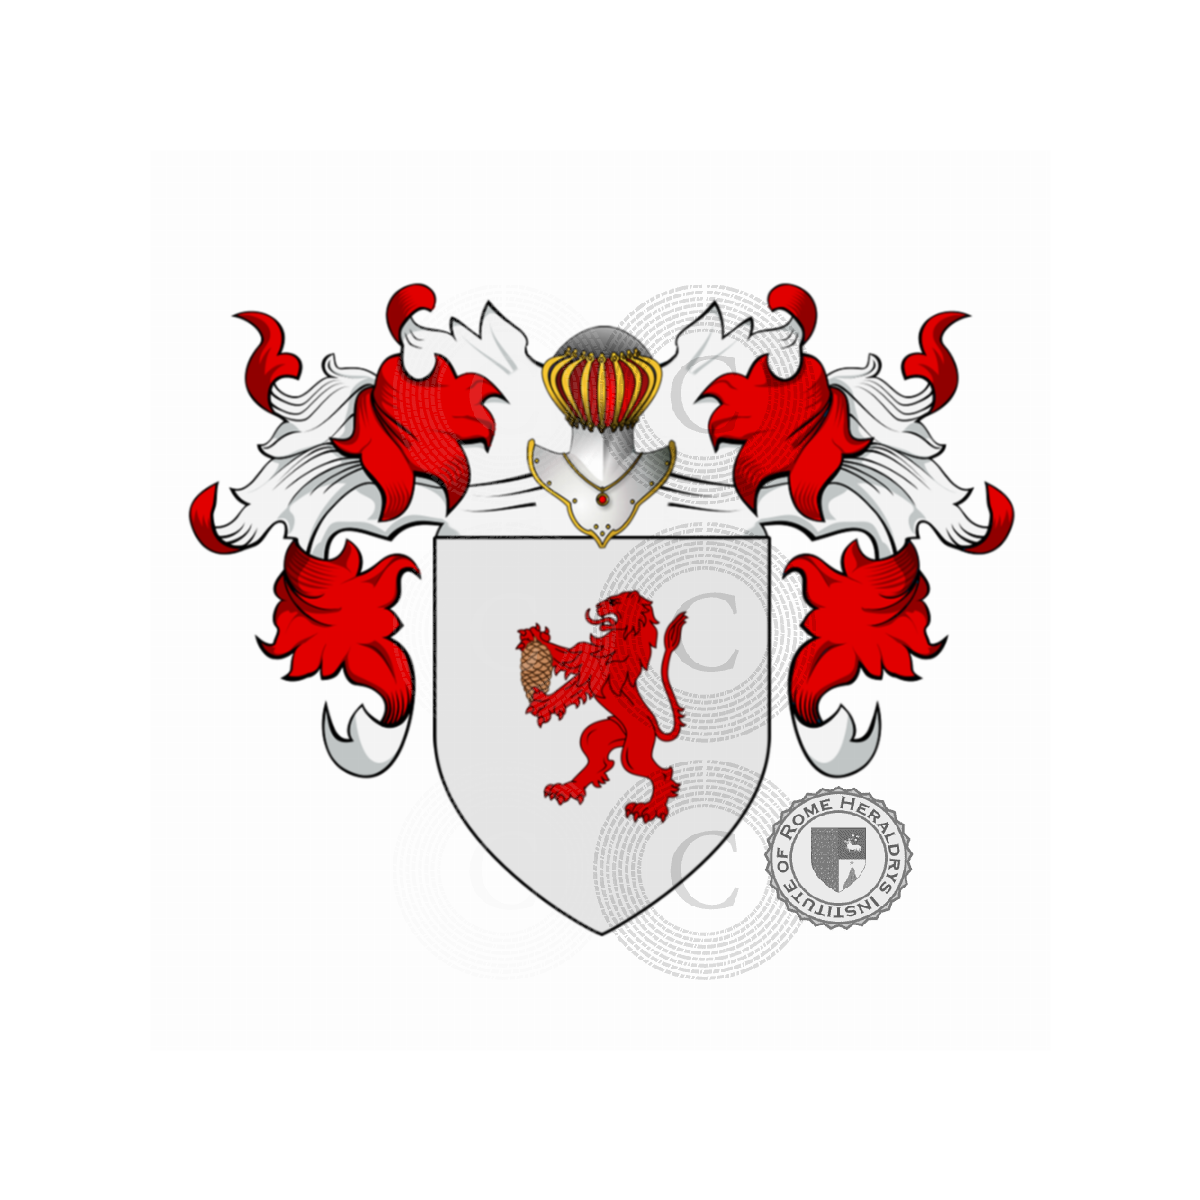 Wappen der FamilieOnesti, de Nesta,degli Onesti,di Donna Onesta,Nesta